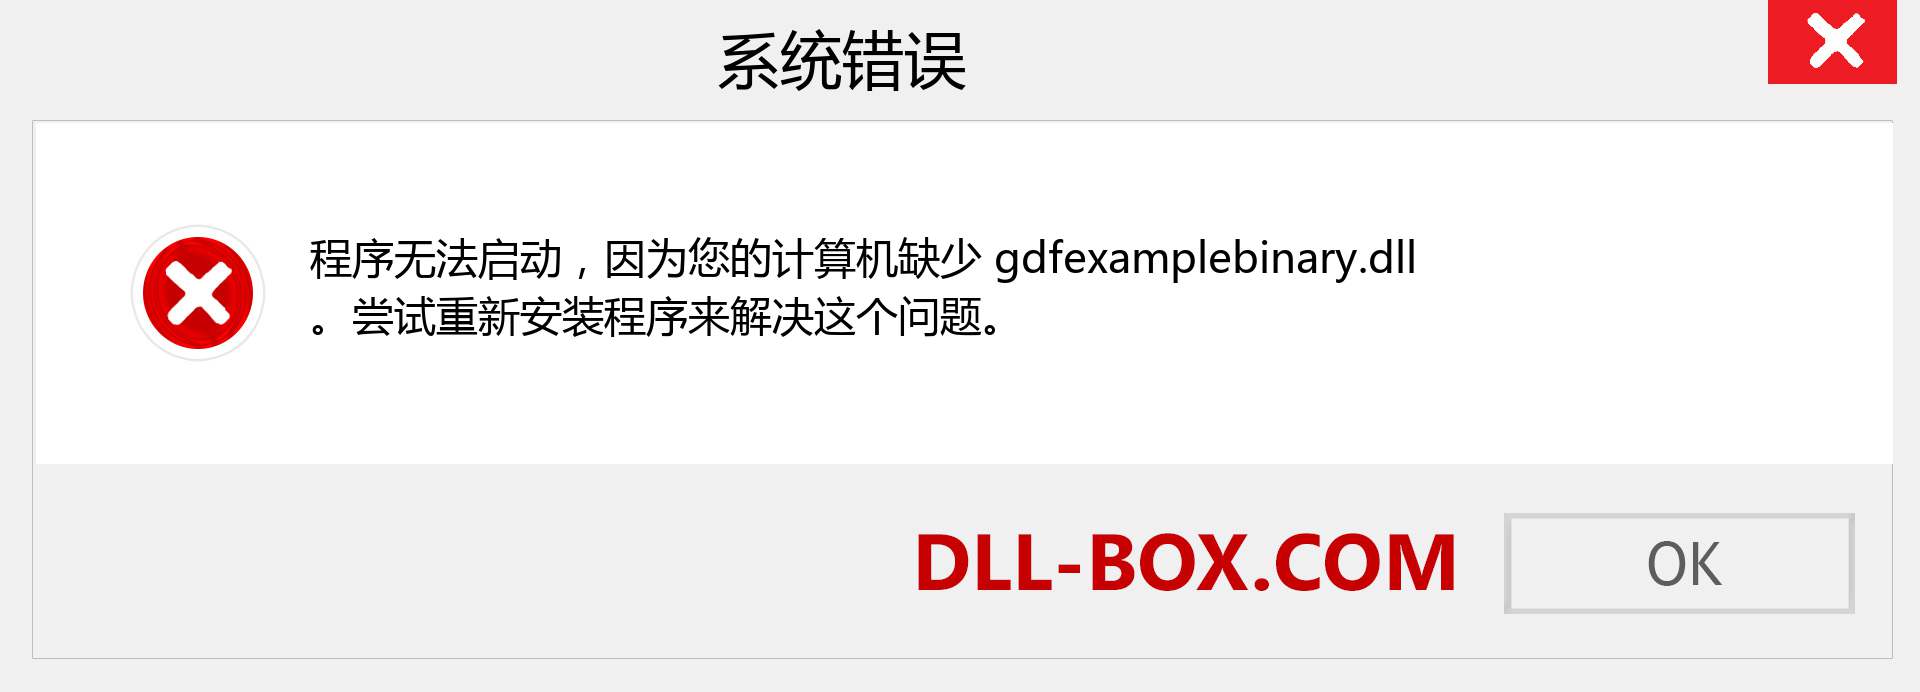 gdfexamplebinary.dll 文件丢失？。 适用于 Windows 7、8、10 的下载 - 修复 Windows、照片、图像上的 gdfexamplebinary dll 丢失错误